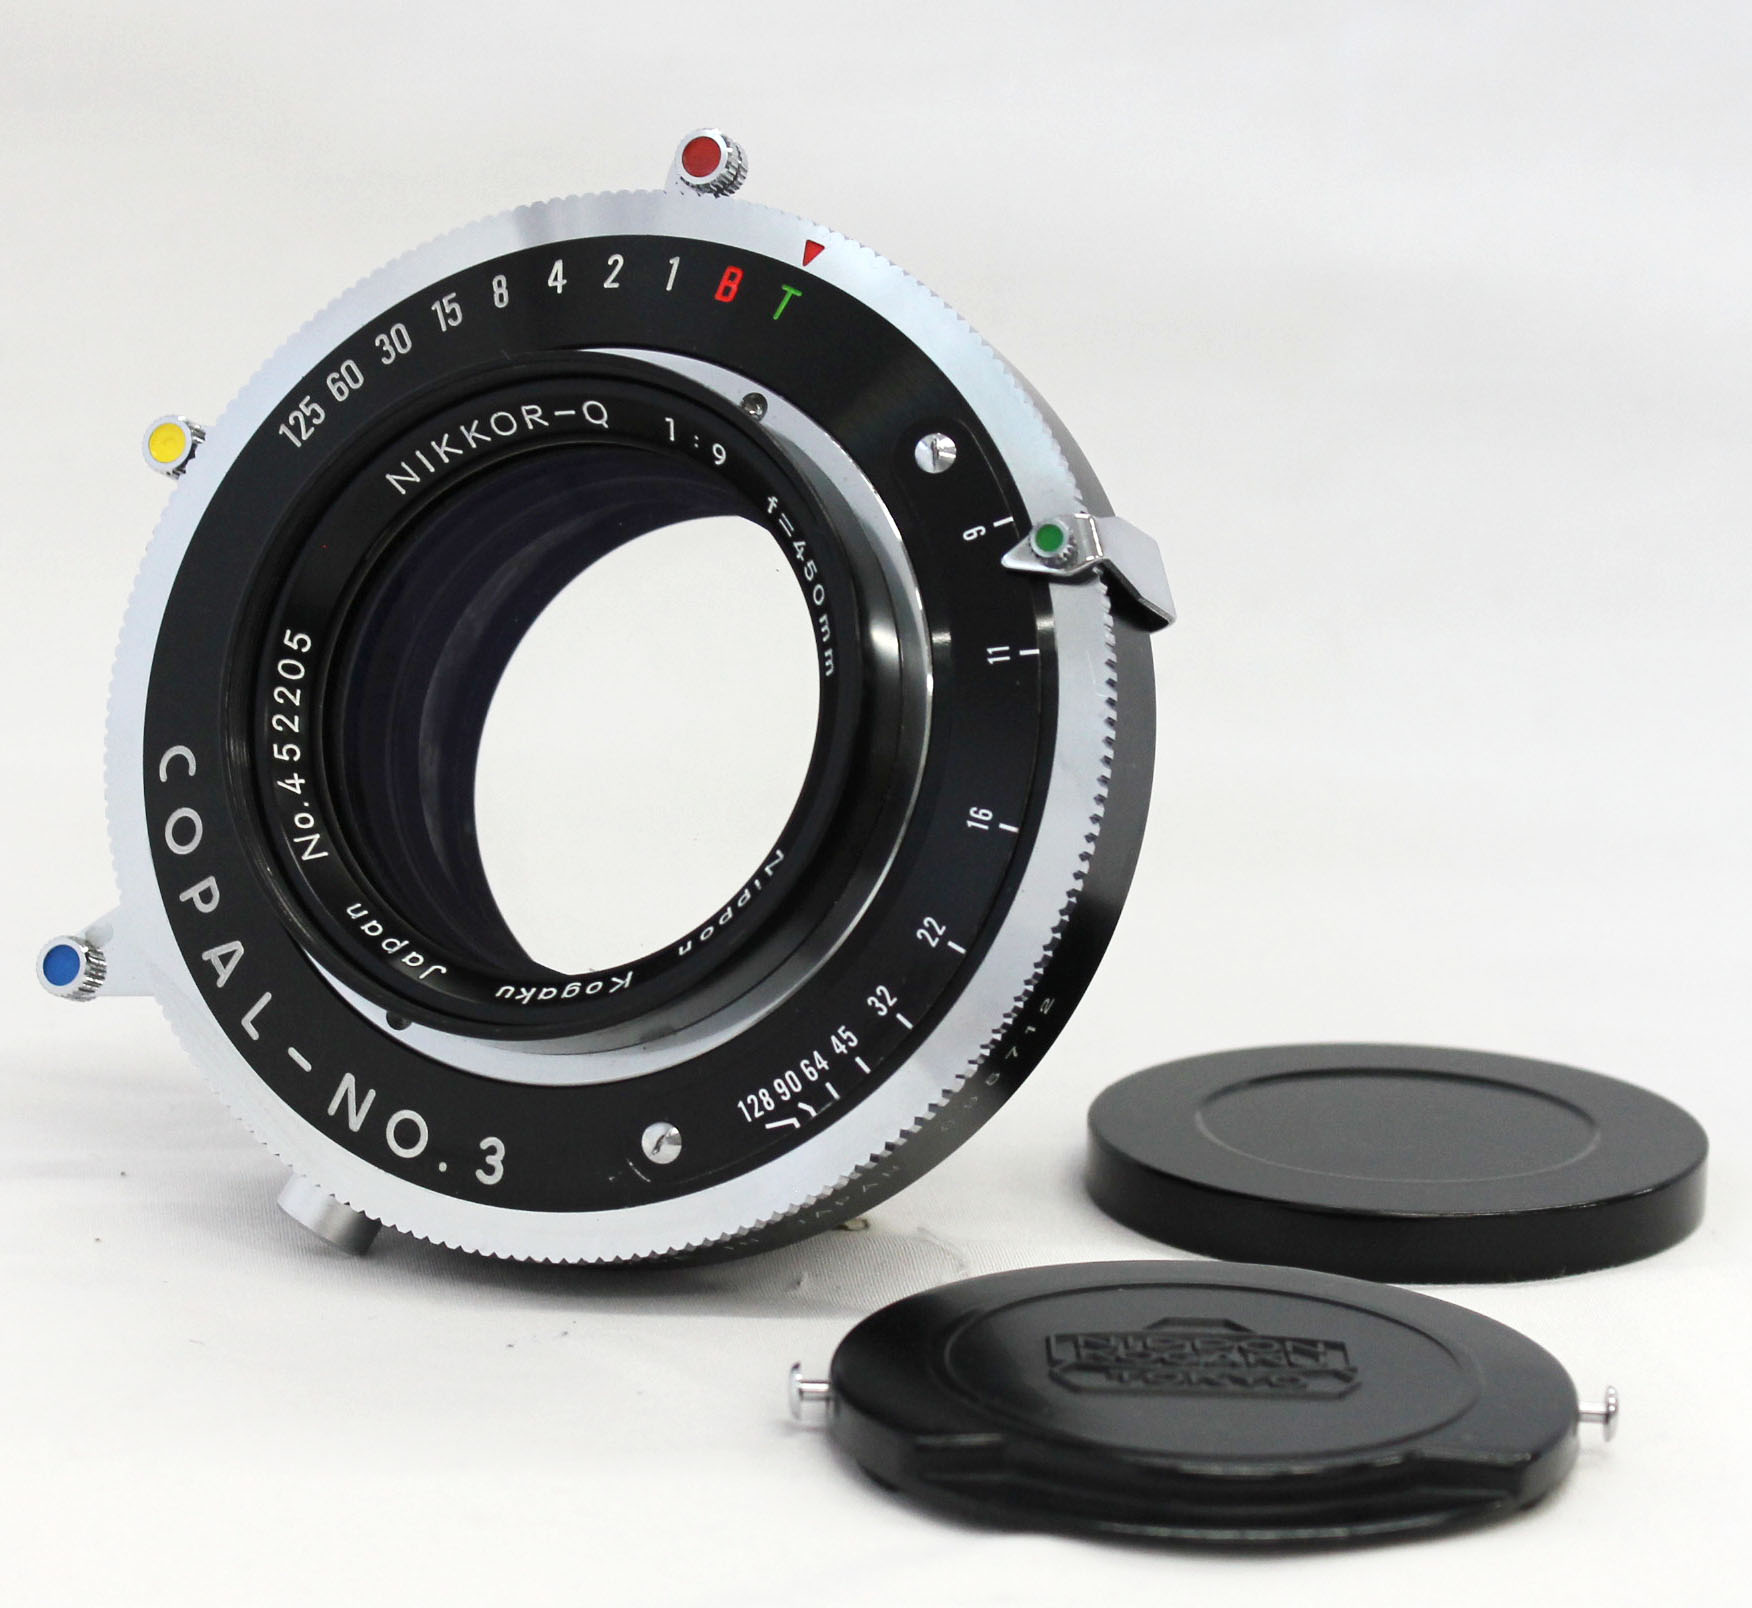 [Near Mint] Nikon Nippon Kogaku Nikkor-Q 450mm F/9 8x10 4x5 Lens Copal No.3 Shutter from Japan